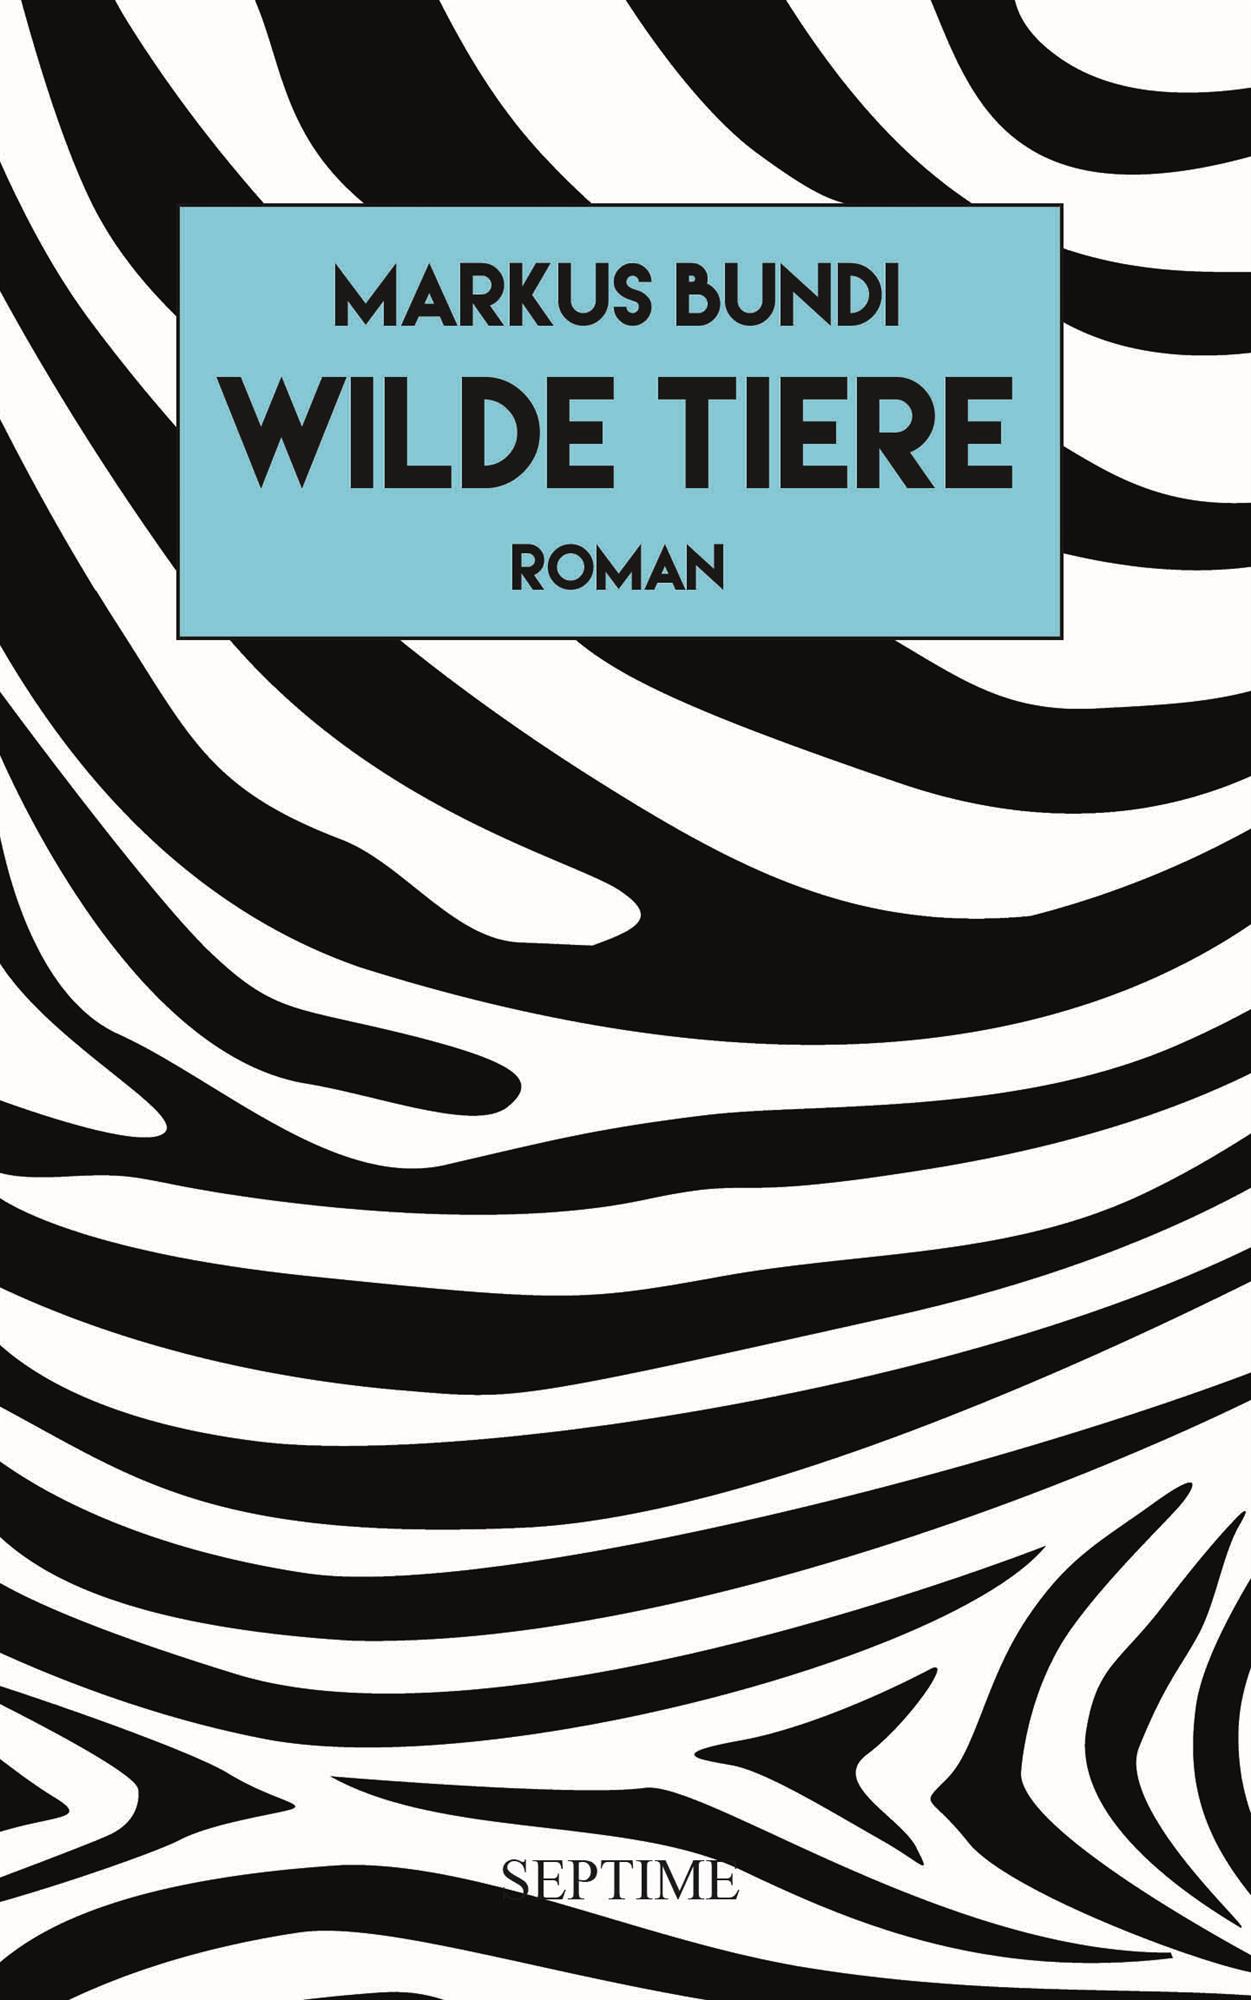 Buchvernissage "Wilde Tiere" von Markus Bundi